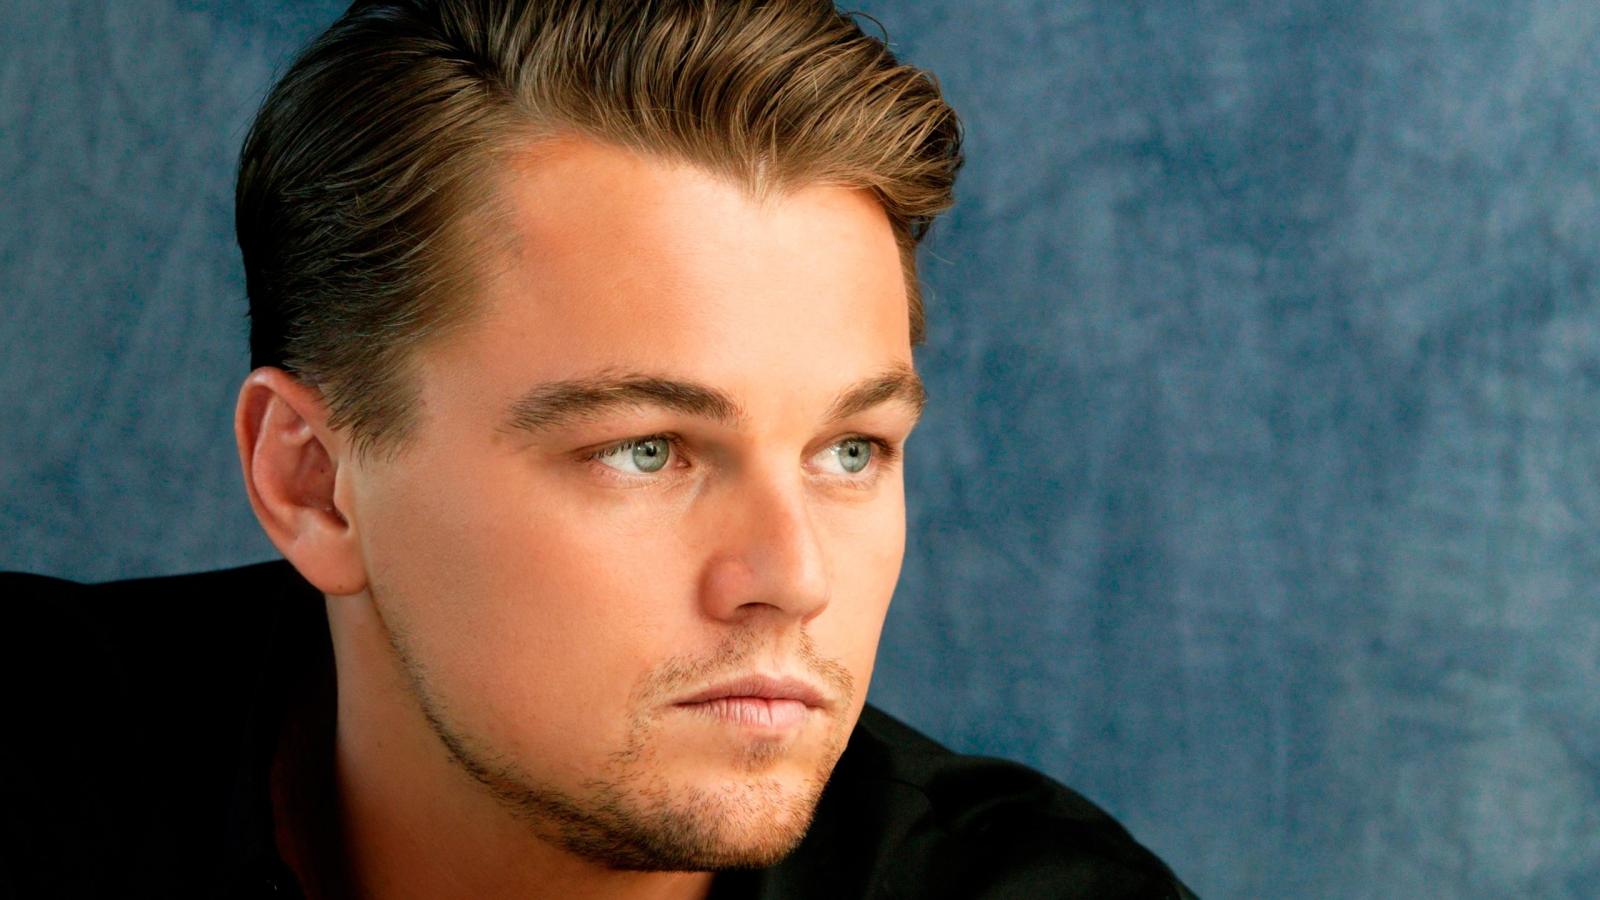 Beautiful Leonardo DiCaprio for 1600 x 900 HDTV resolution